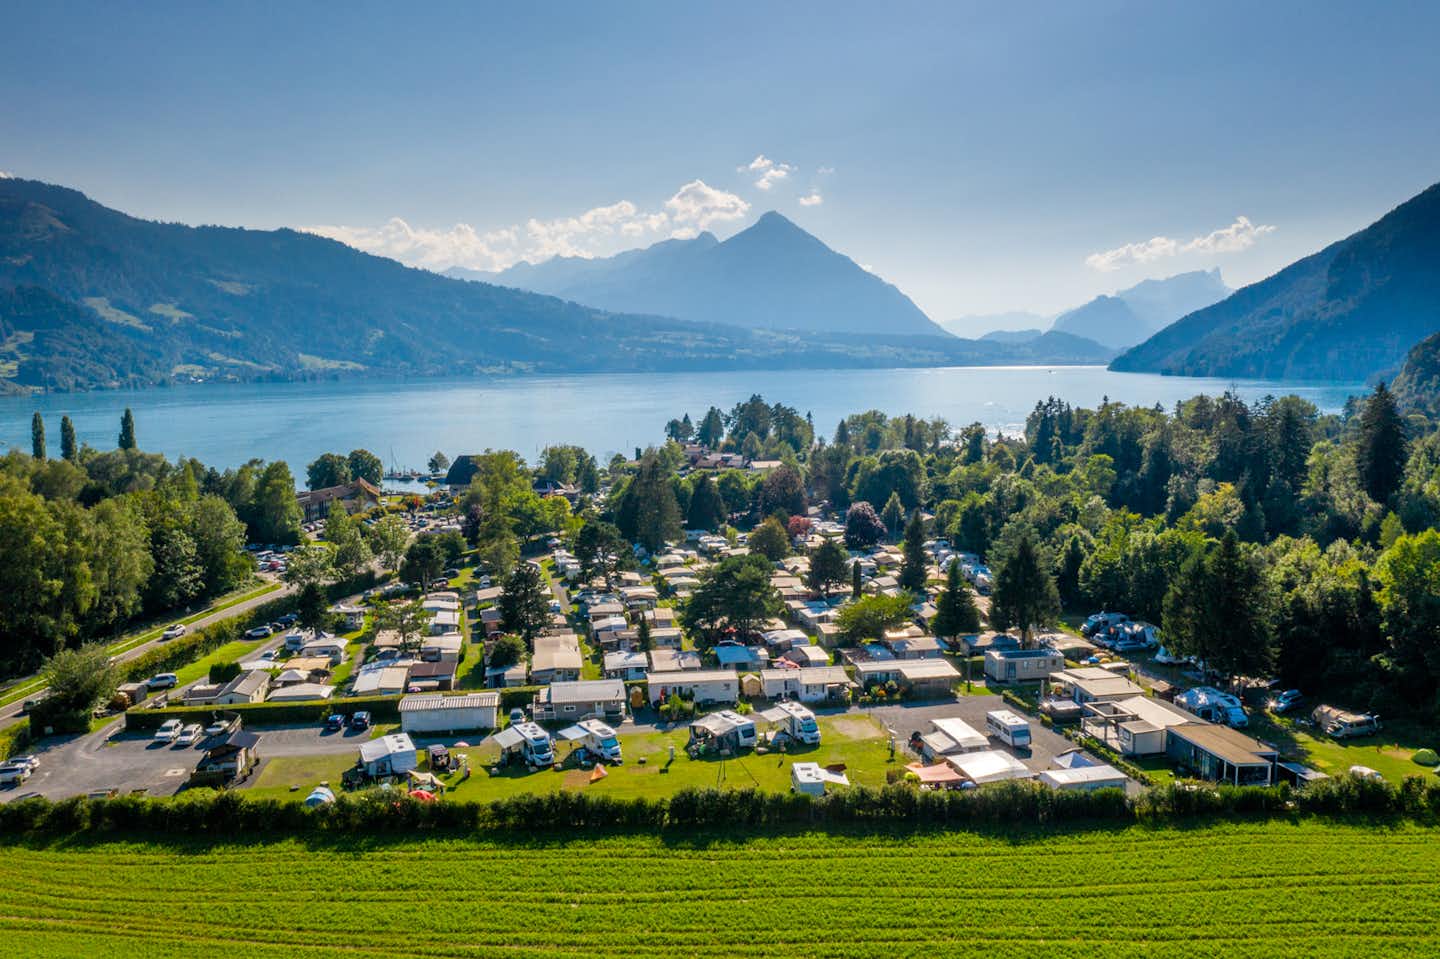 Camping Alpenblick  -  Luftaufnahme vom Campingplatz am See